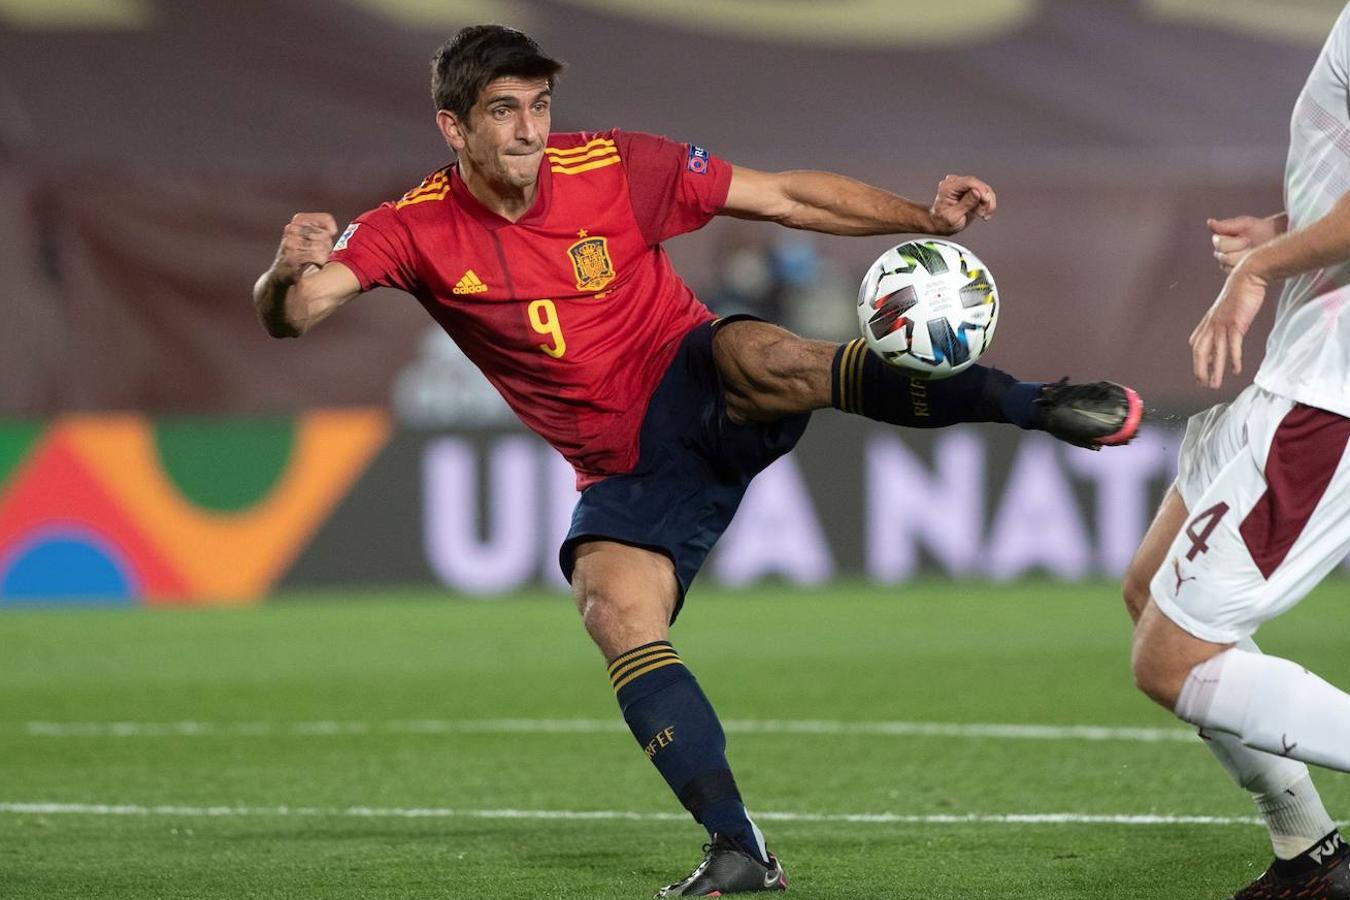 Gerard Moreno. Partidos con la selección: 6. Goles con España: 3. Goles/Partidos en la 2019/20: 20/37. Goles/Partidos en la 2020/21: 3/5. Edad: 28. Equipo: Villarreal.